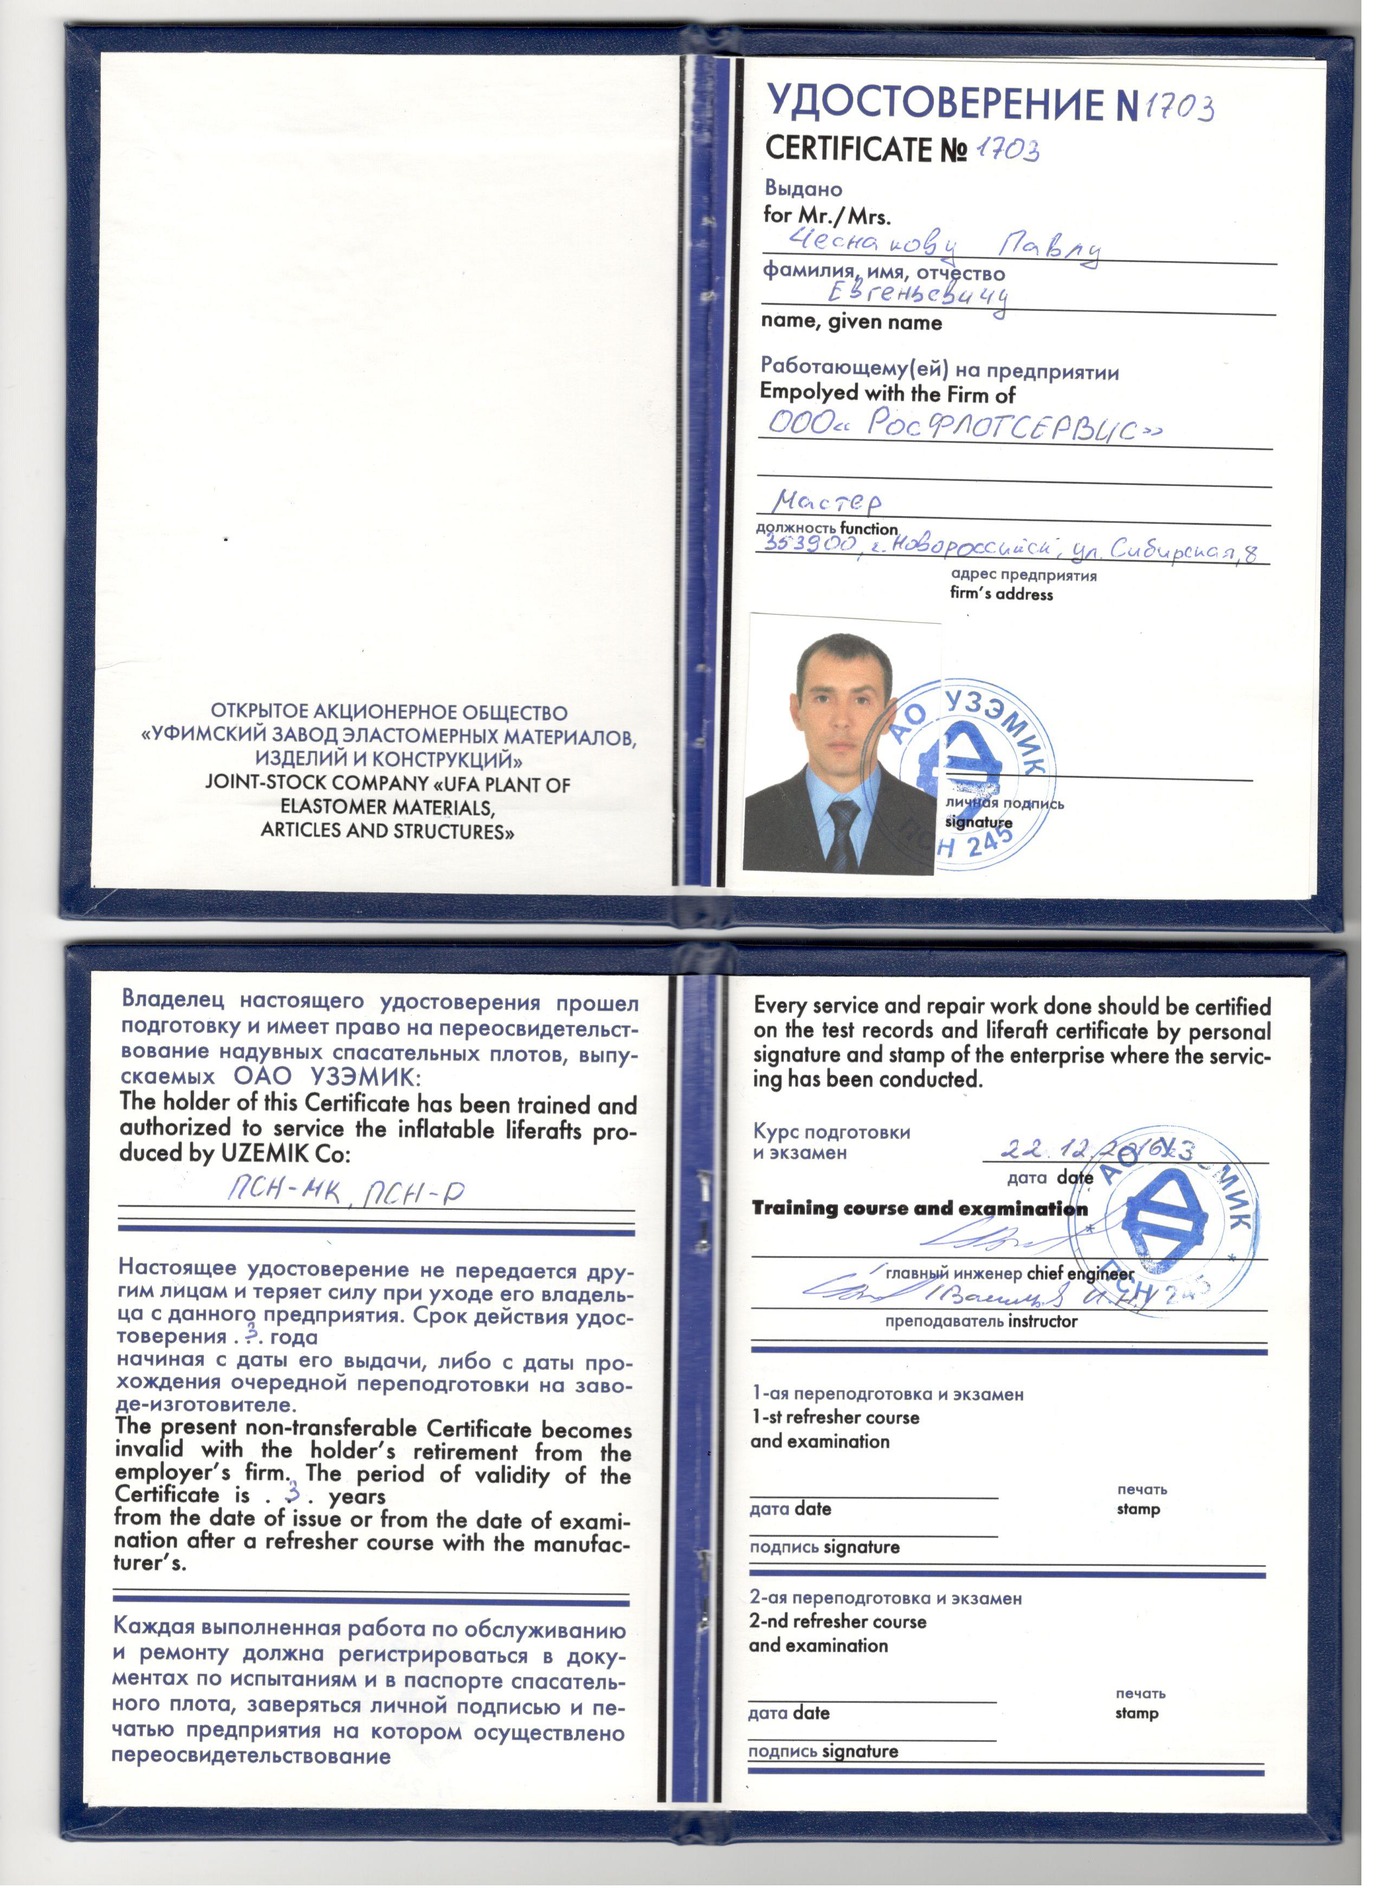 Получен сертификат на право проверки спасательных плотов производства 